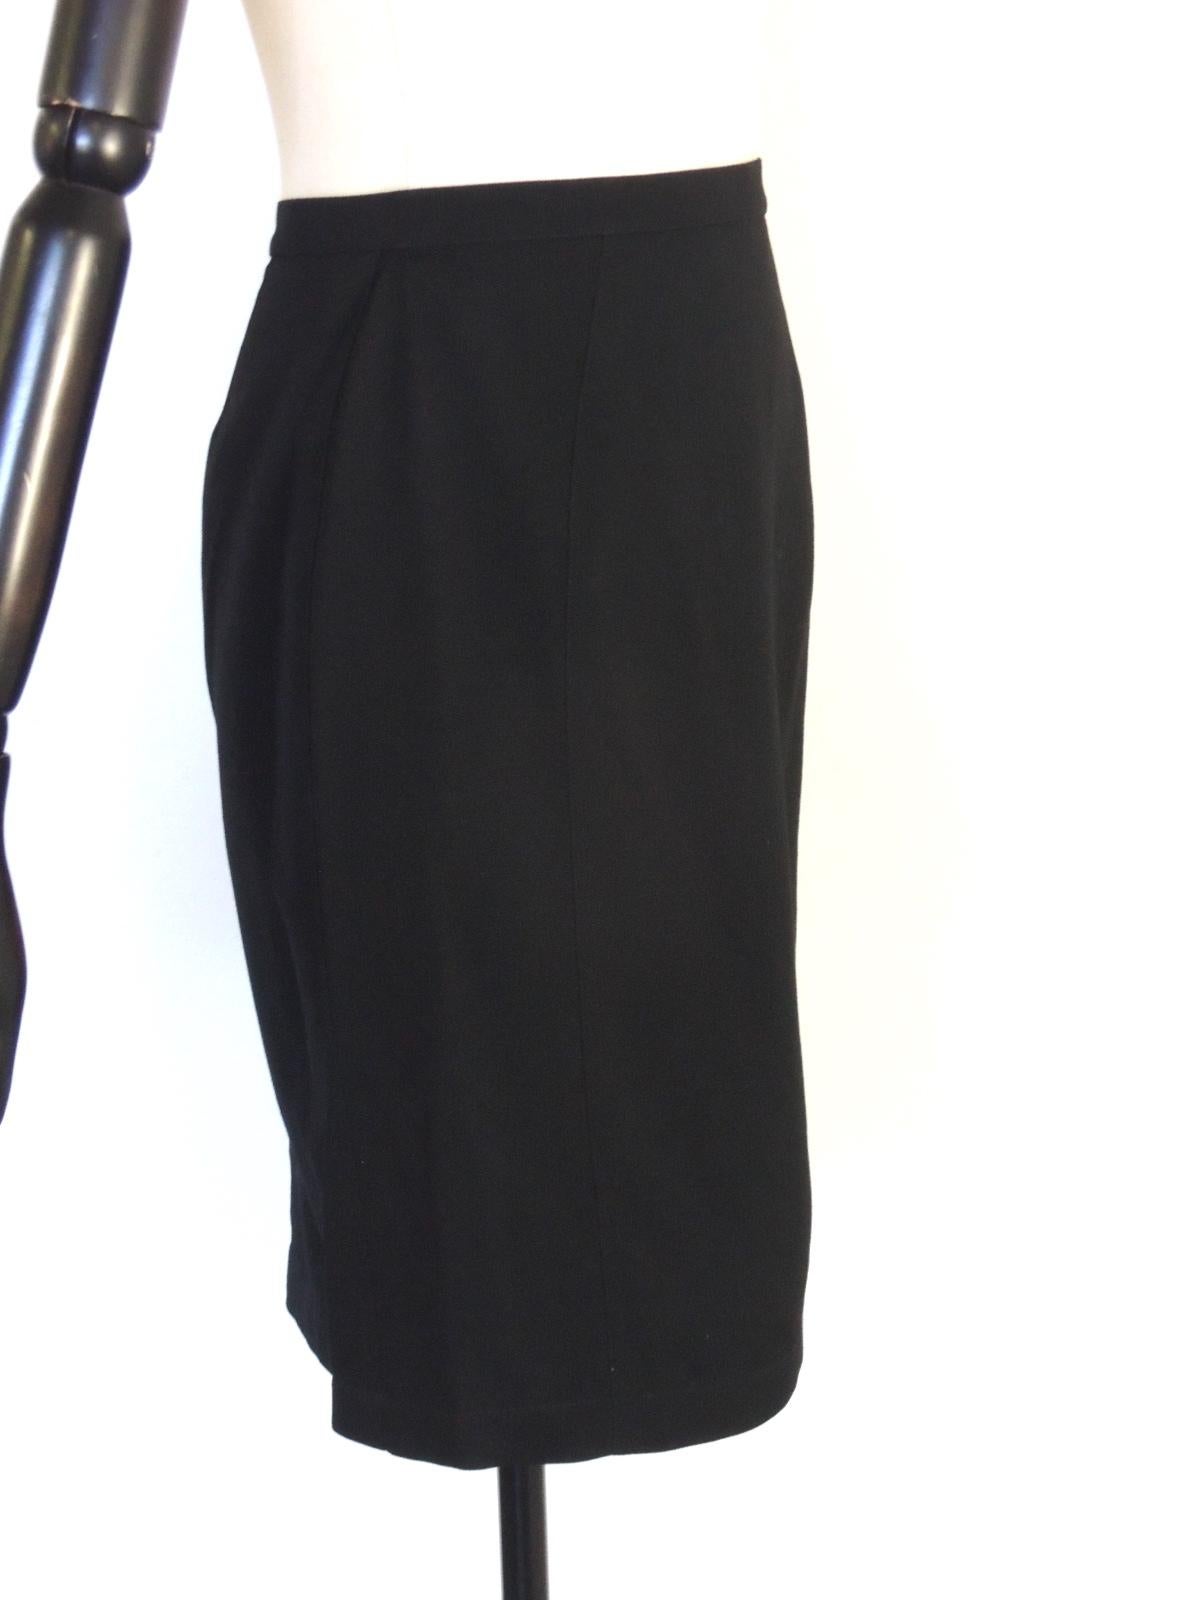 Thierry Mugler Vintage Black Embellished Skirt Suit For Sale 8